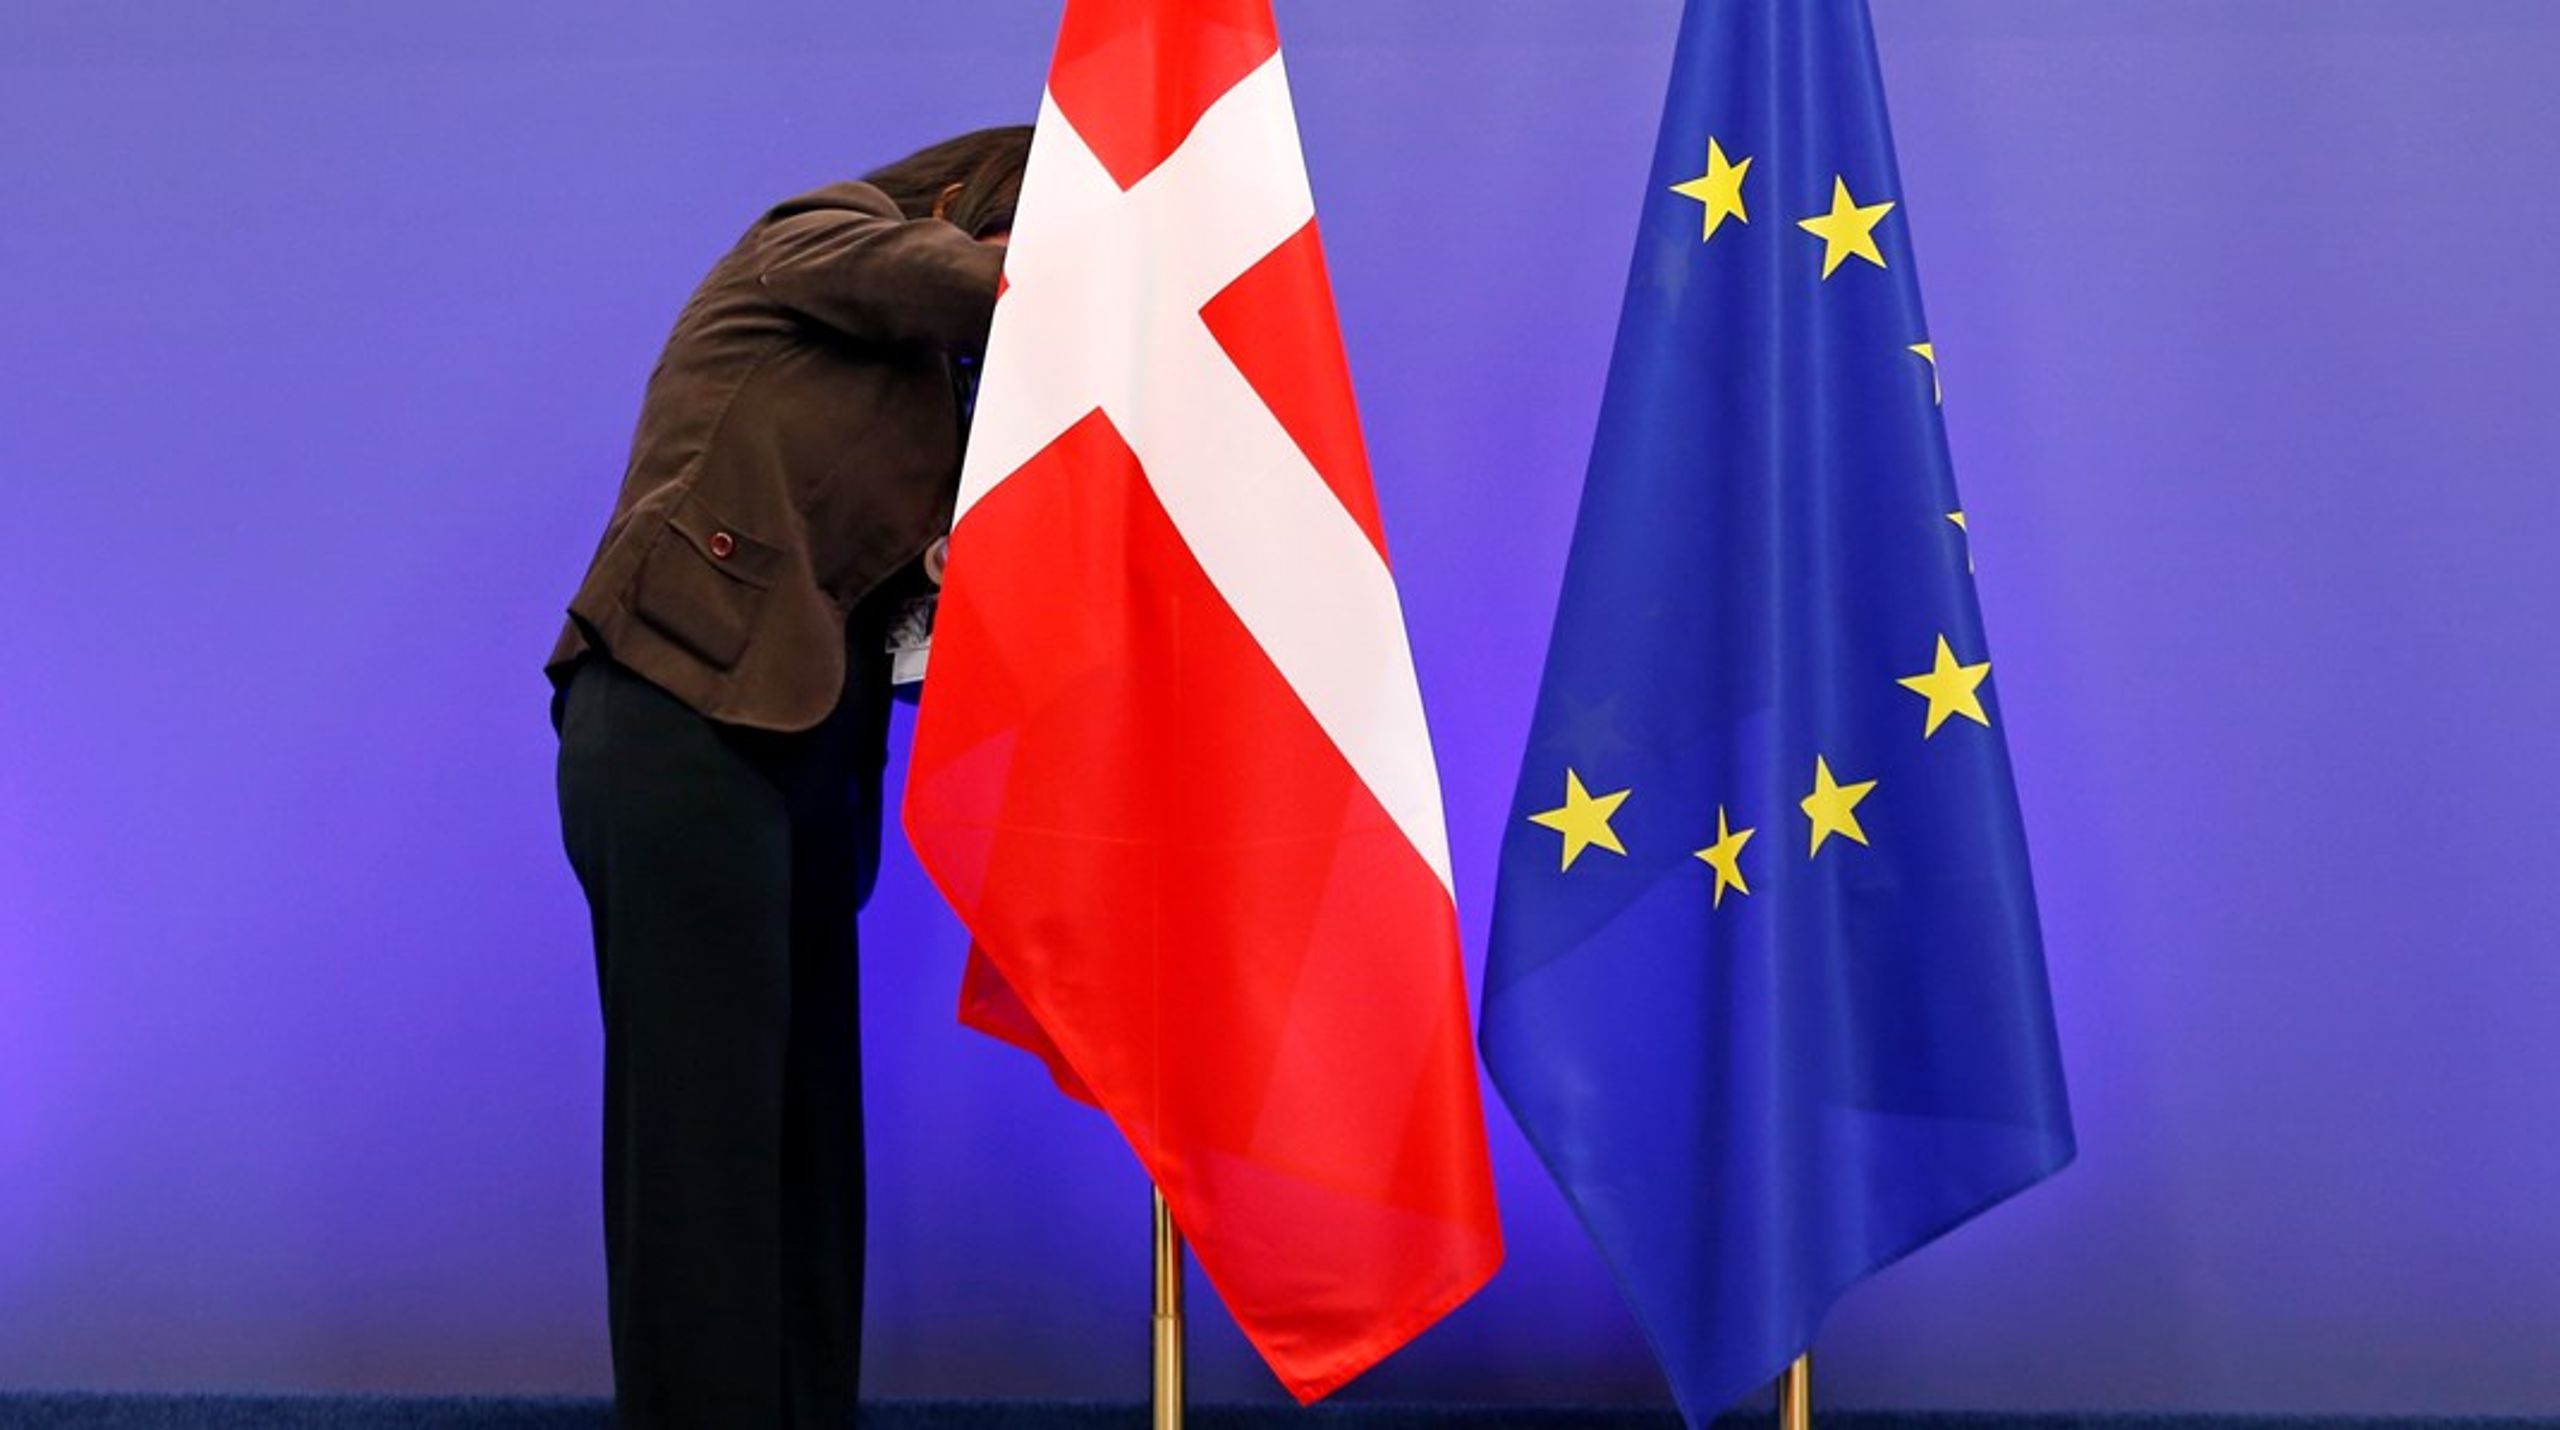 Hvad skal være Danmarks prioriteter i EU de kommende år? Det er til debat på Christiansborg i denne uge.